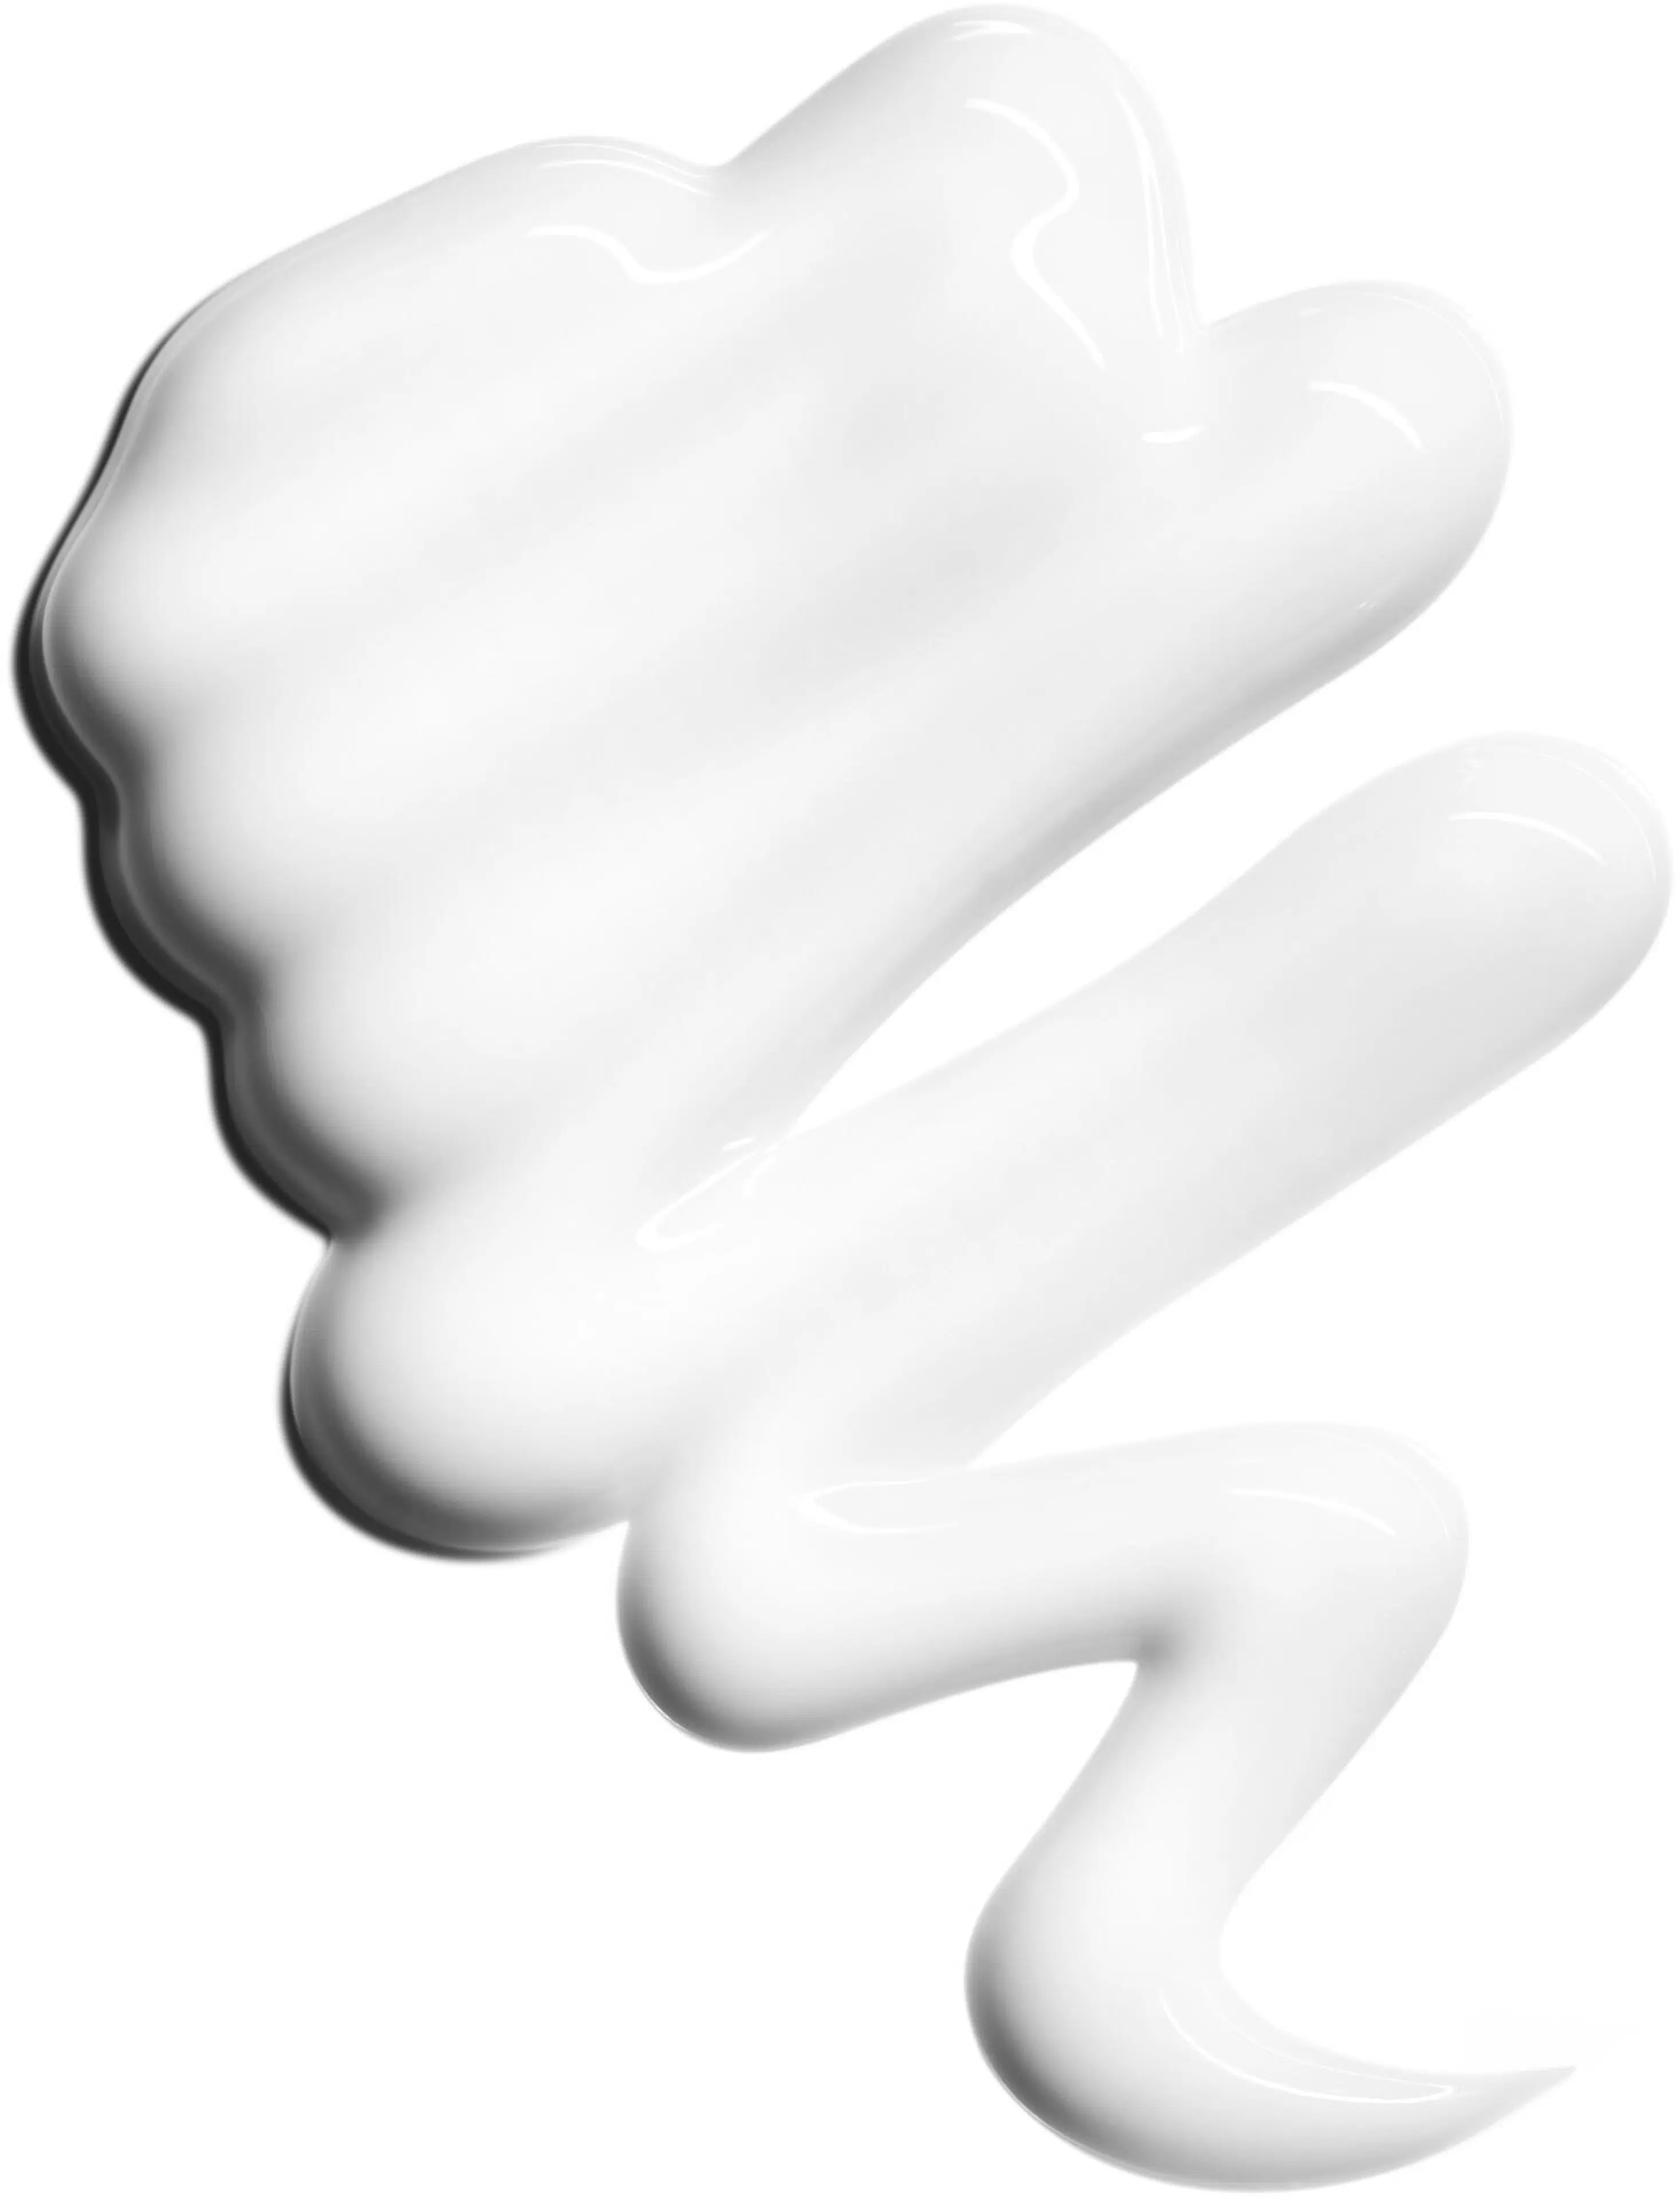 Clarins Velvet Cleansing Milk puhdistusemulsio 400 ml 